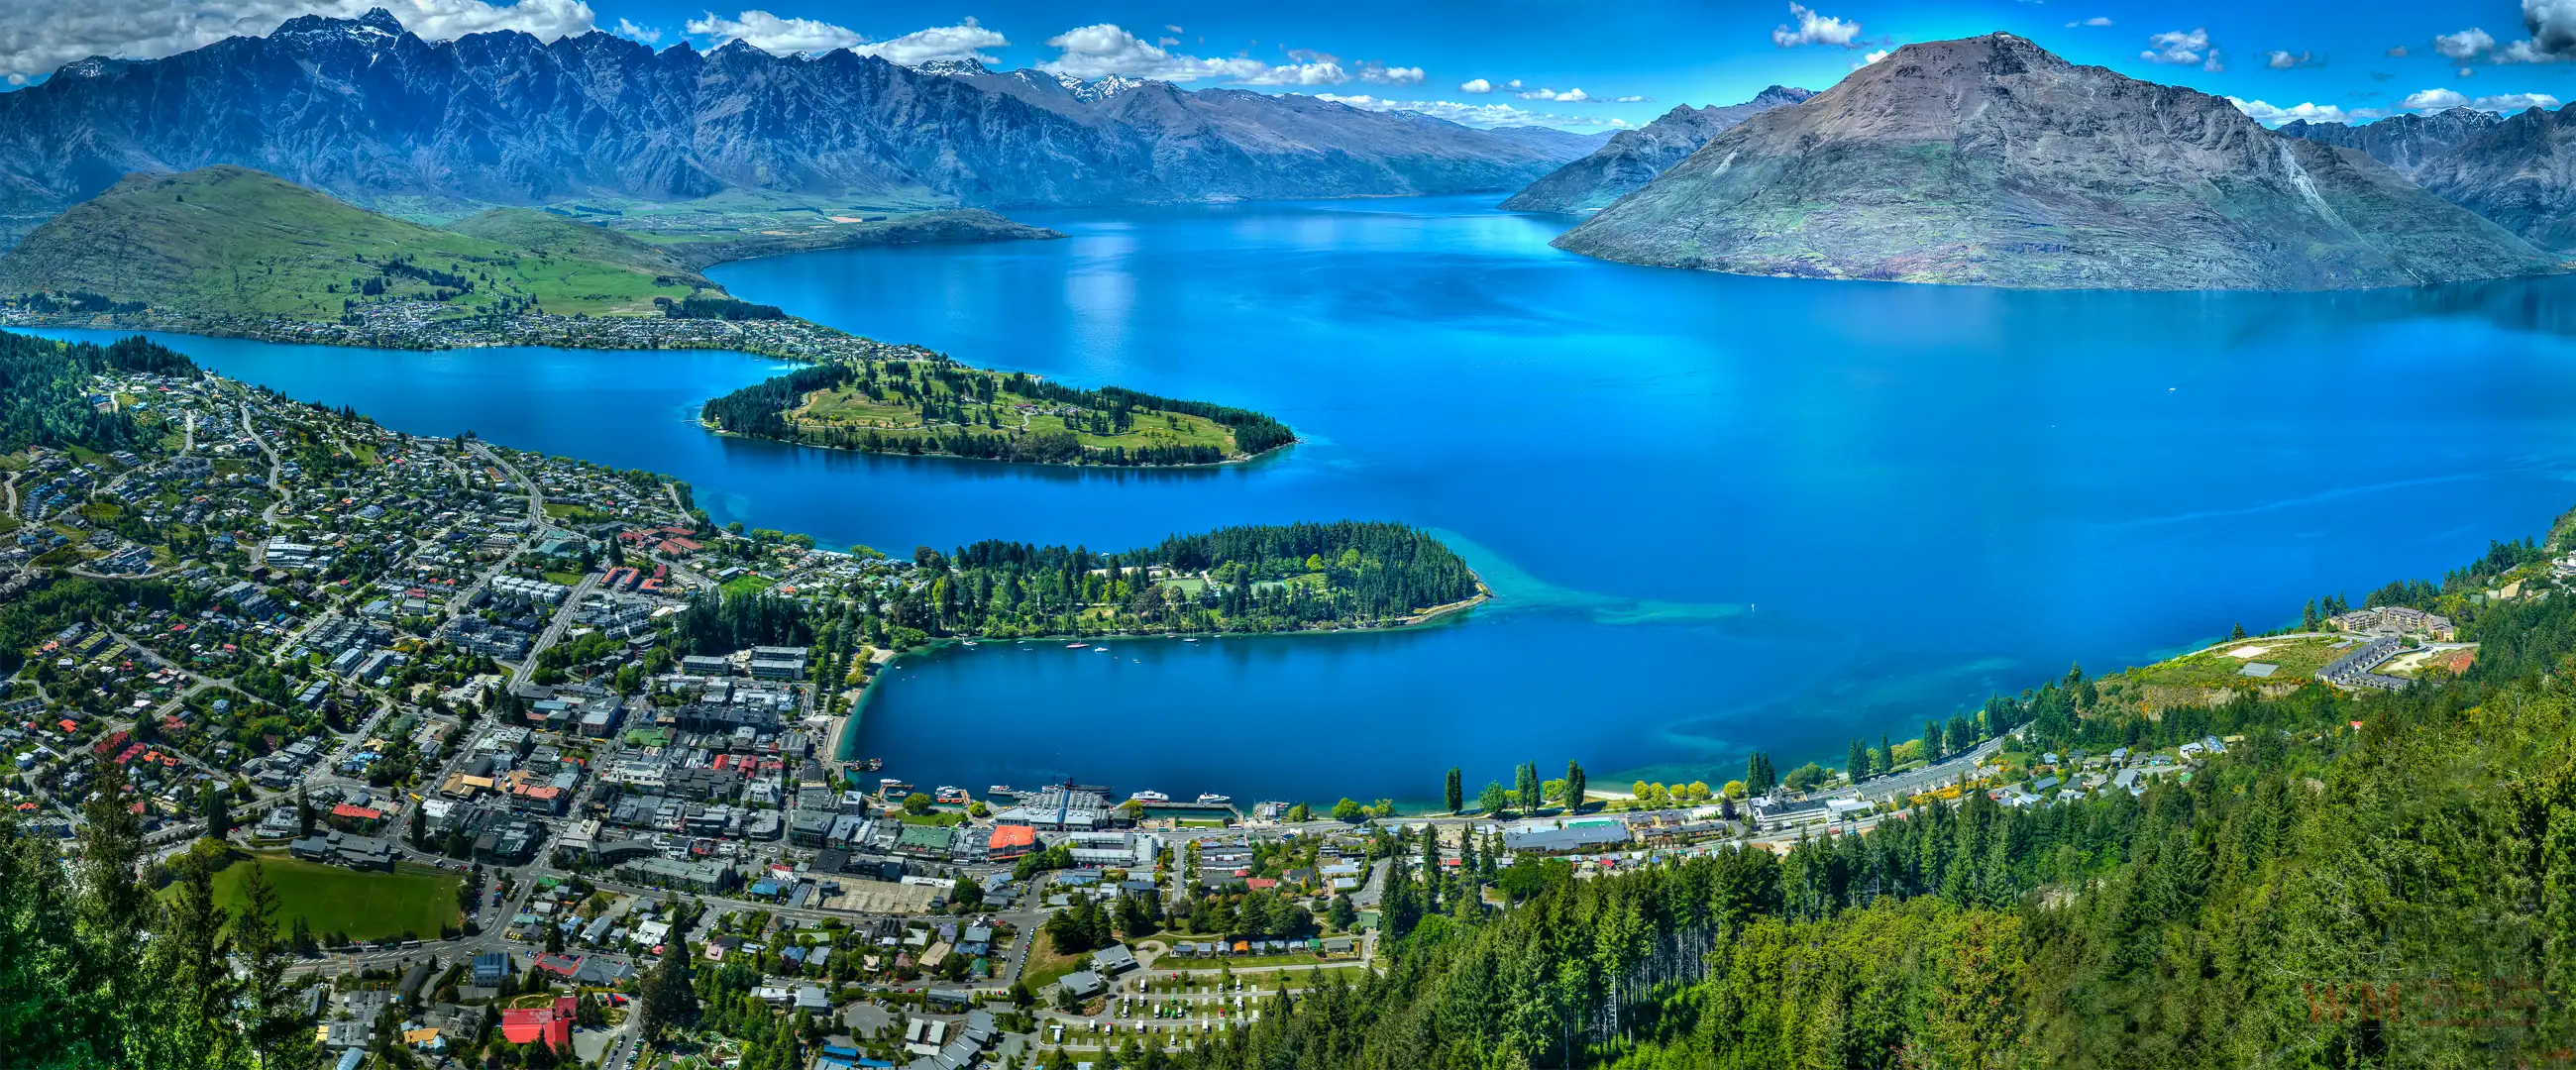 Neuseeland tourism